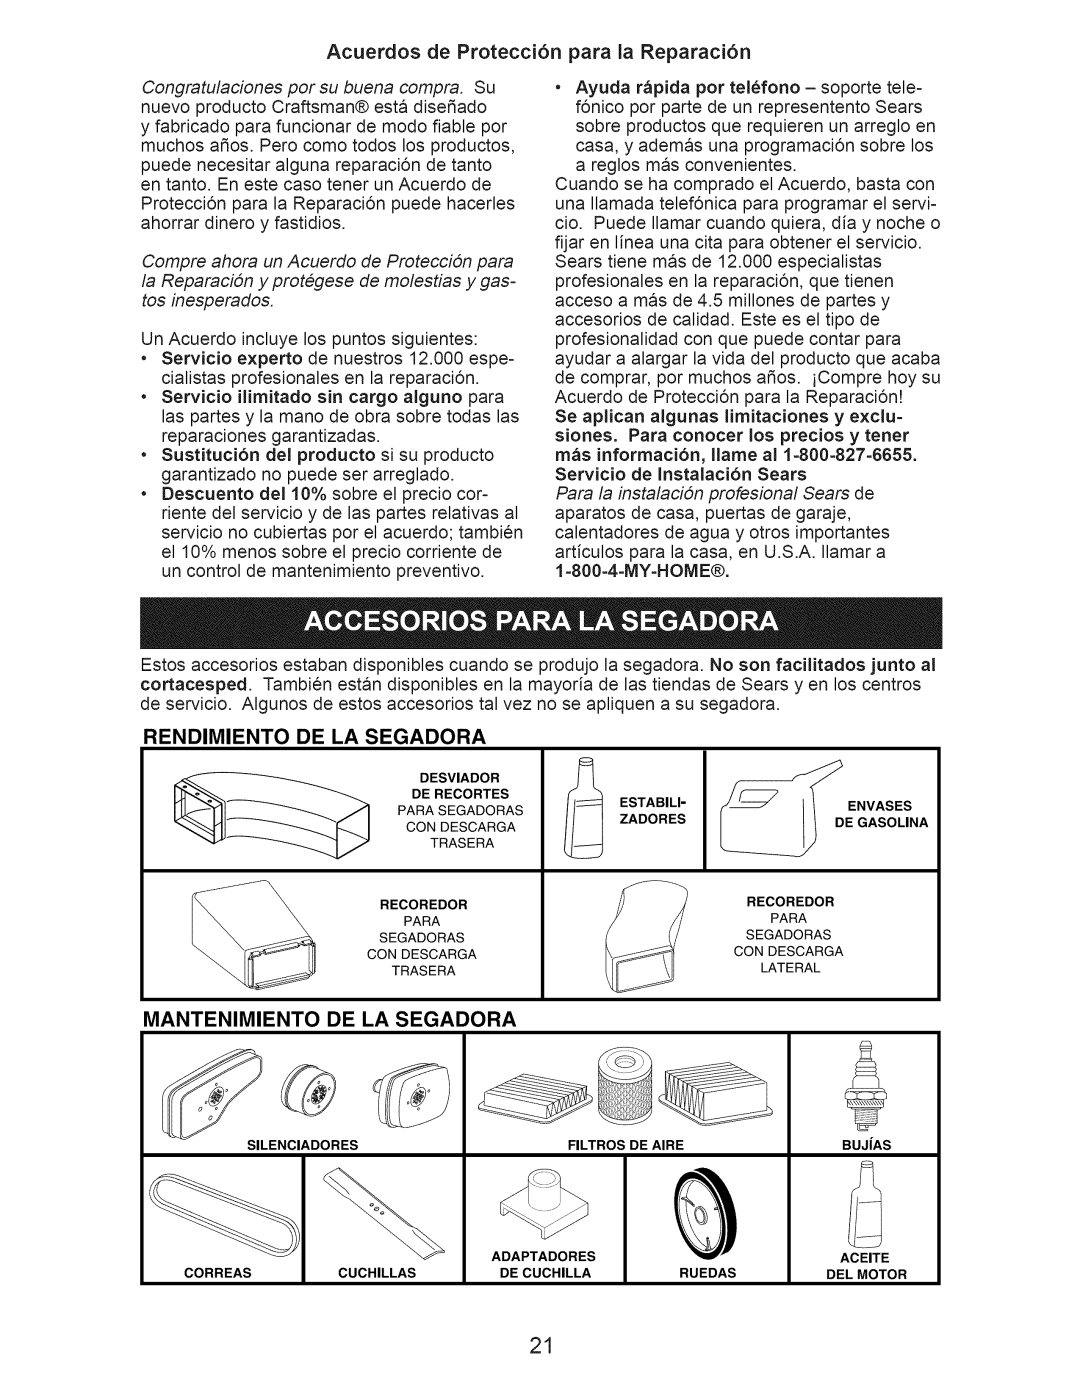 Craftsman 917.389061 owner manual Acuerdos de Protecci6n para la Reparaci6n, Rendimiento, De La Segadora, Mantenimiento 